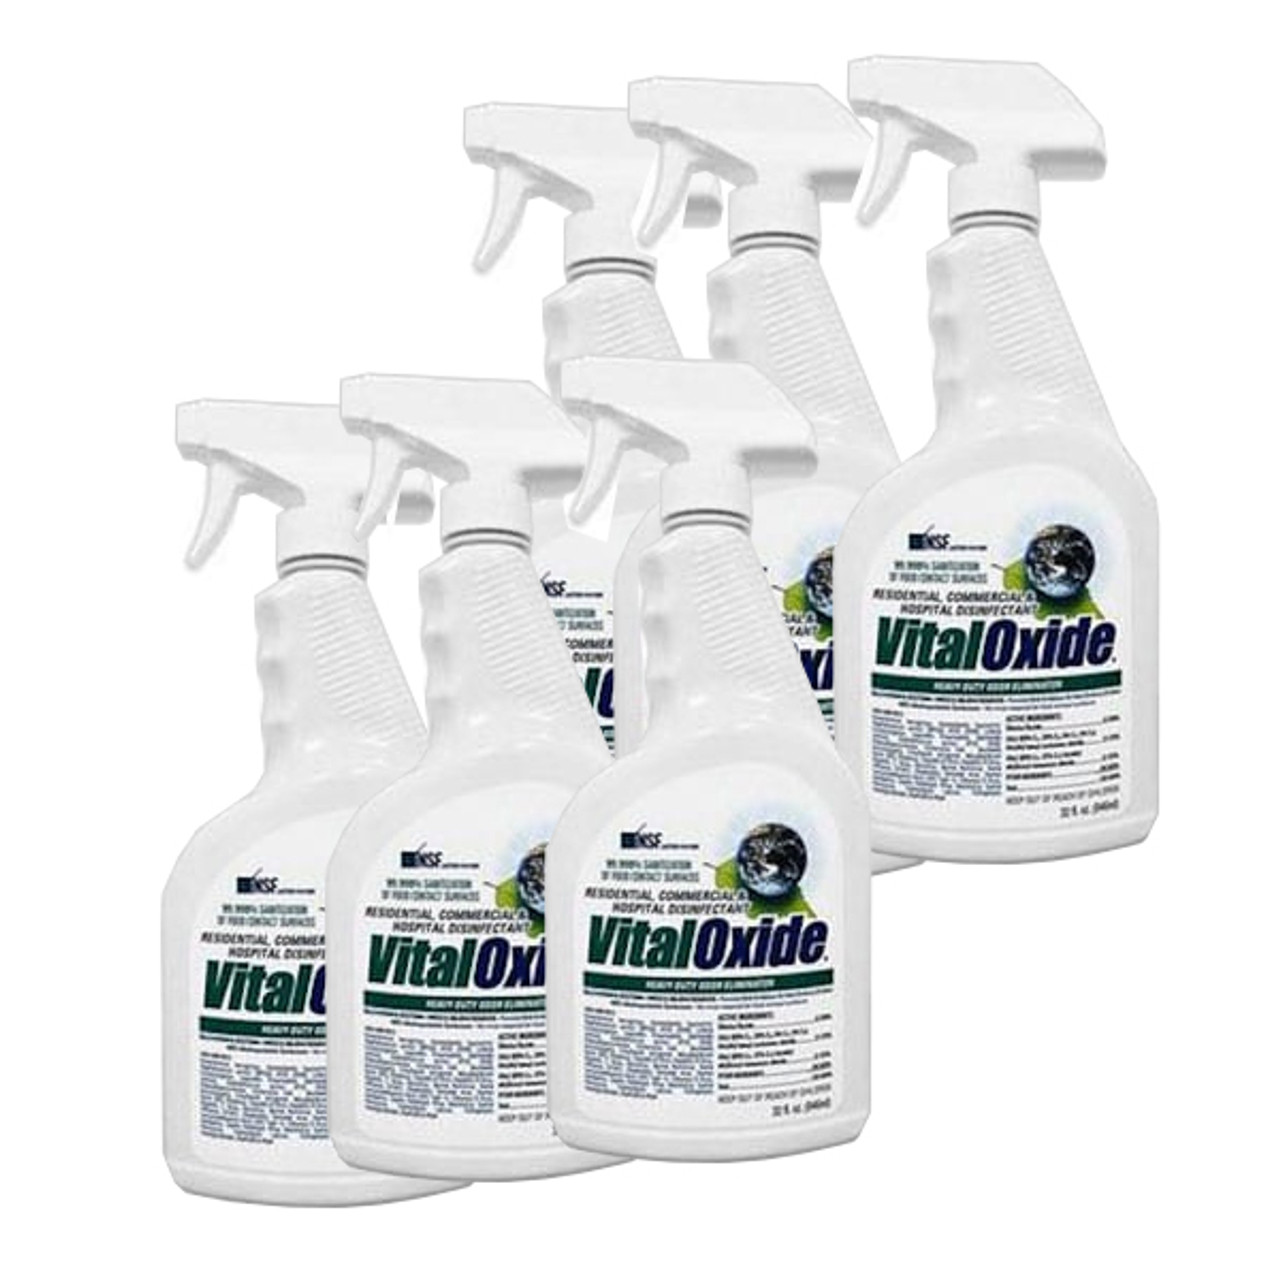 Vital Oxide 1 Quart Spray Bottle - 6 Pack - Use Against COVID